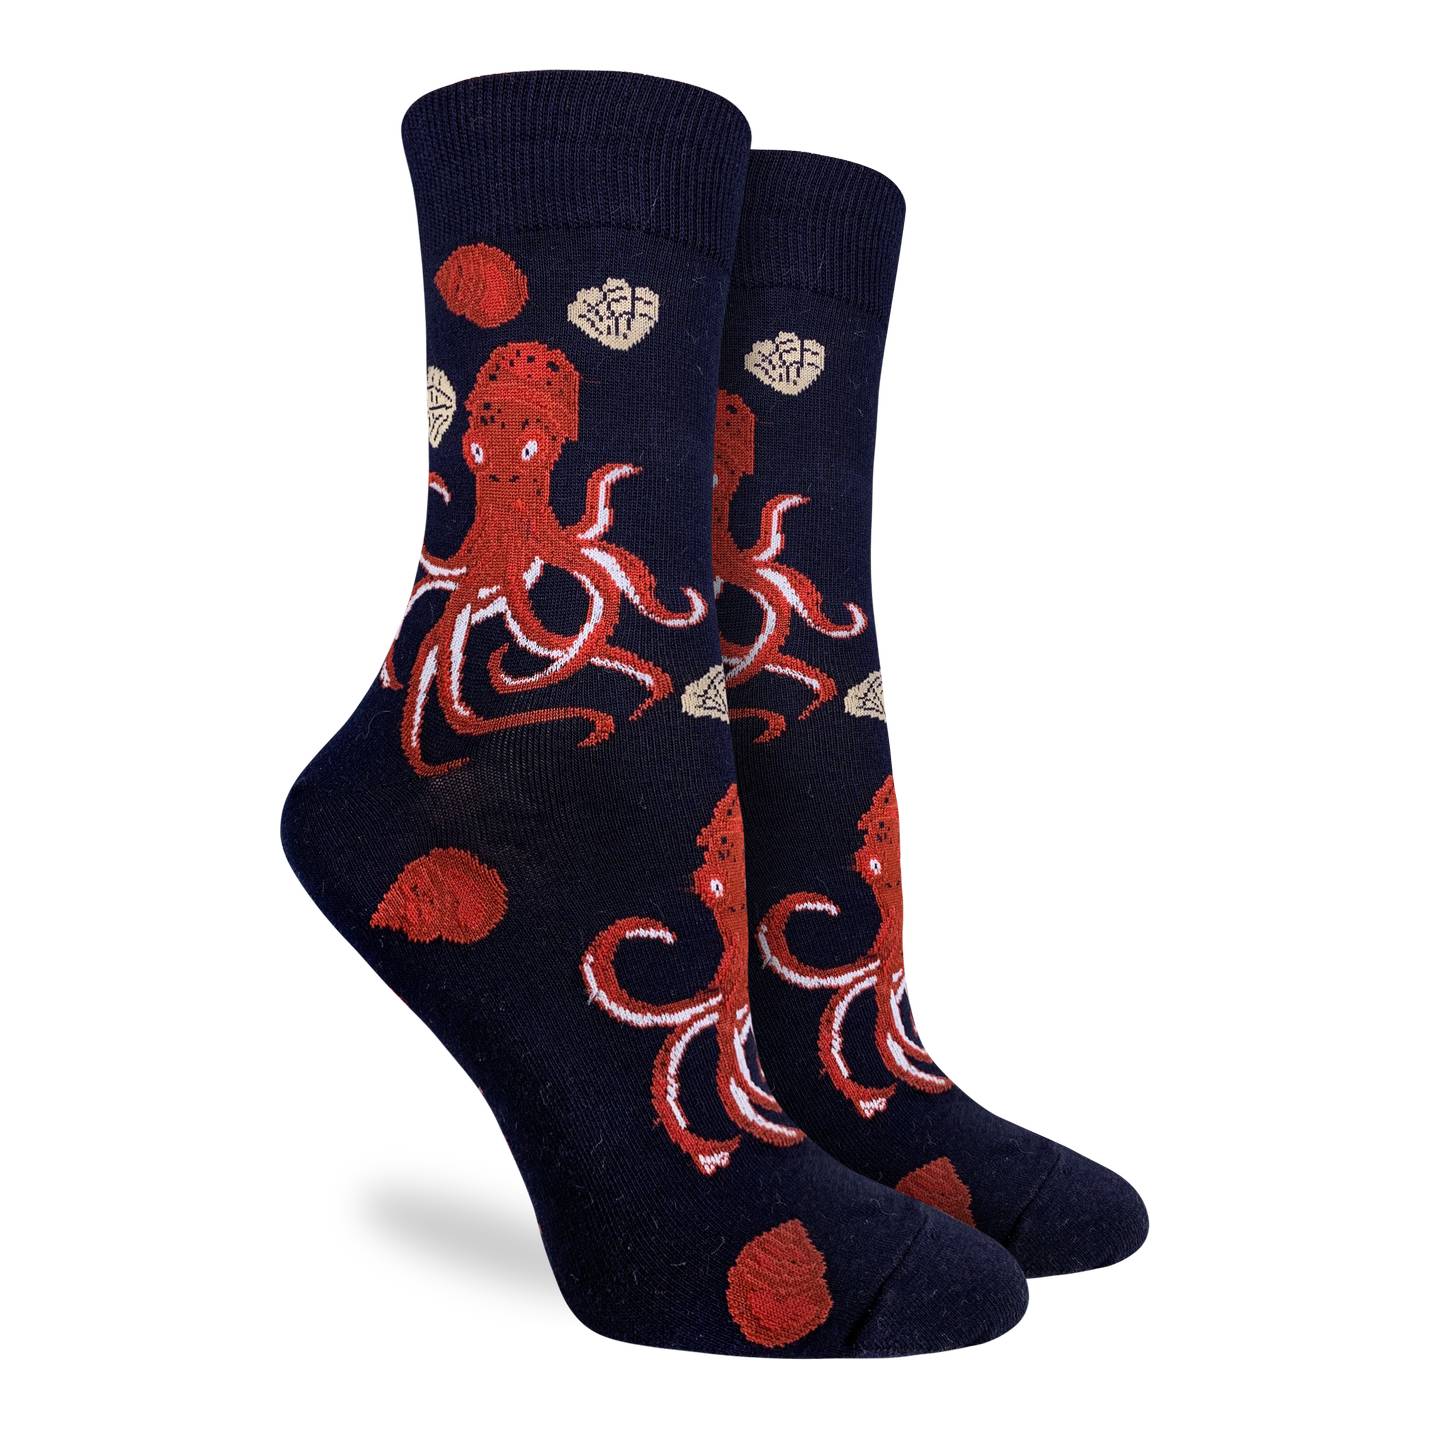 Good Luck Sock - Women's Octopus Socks